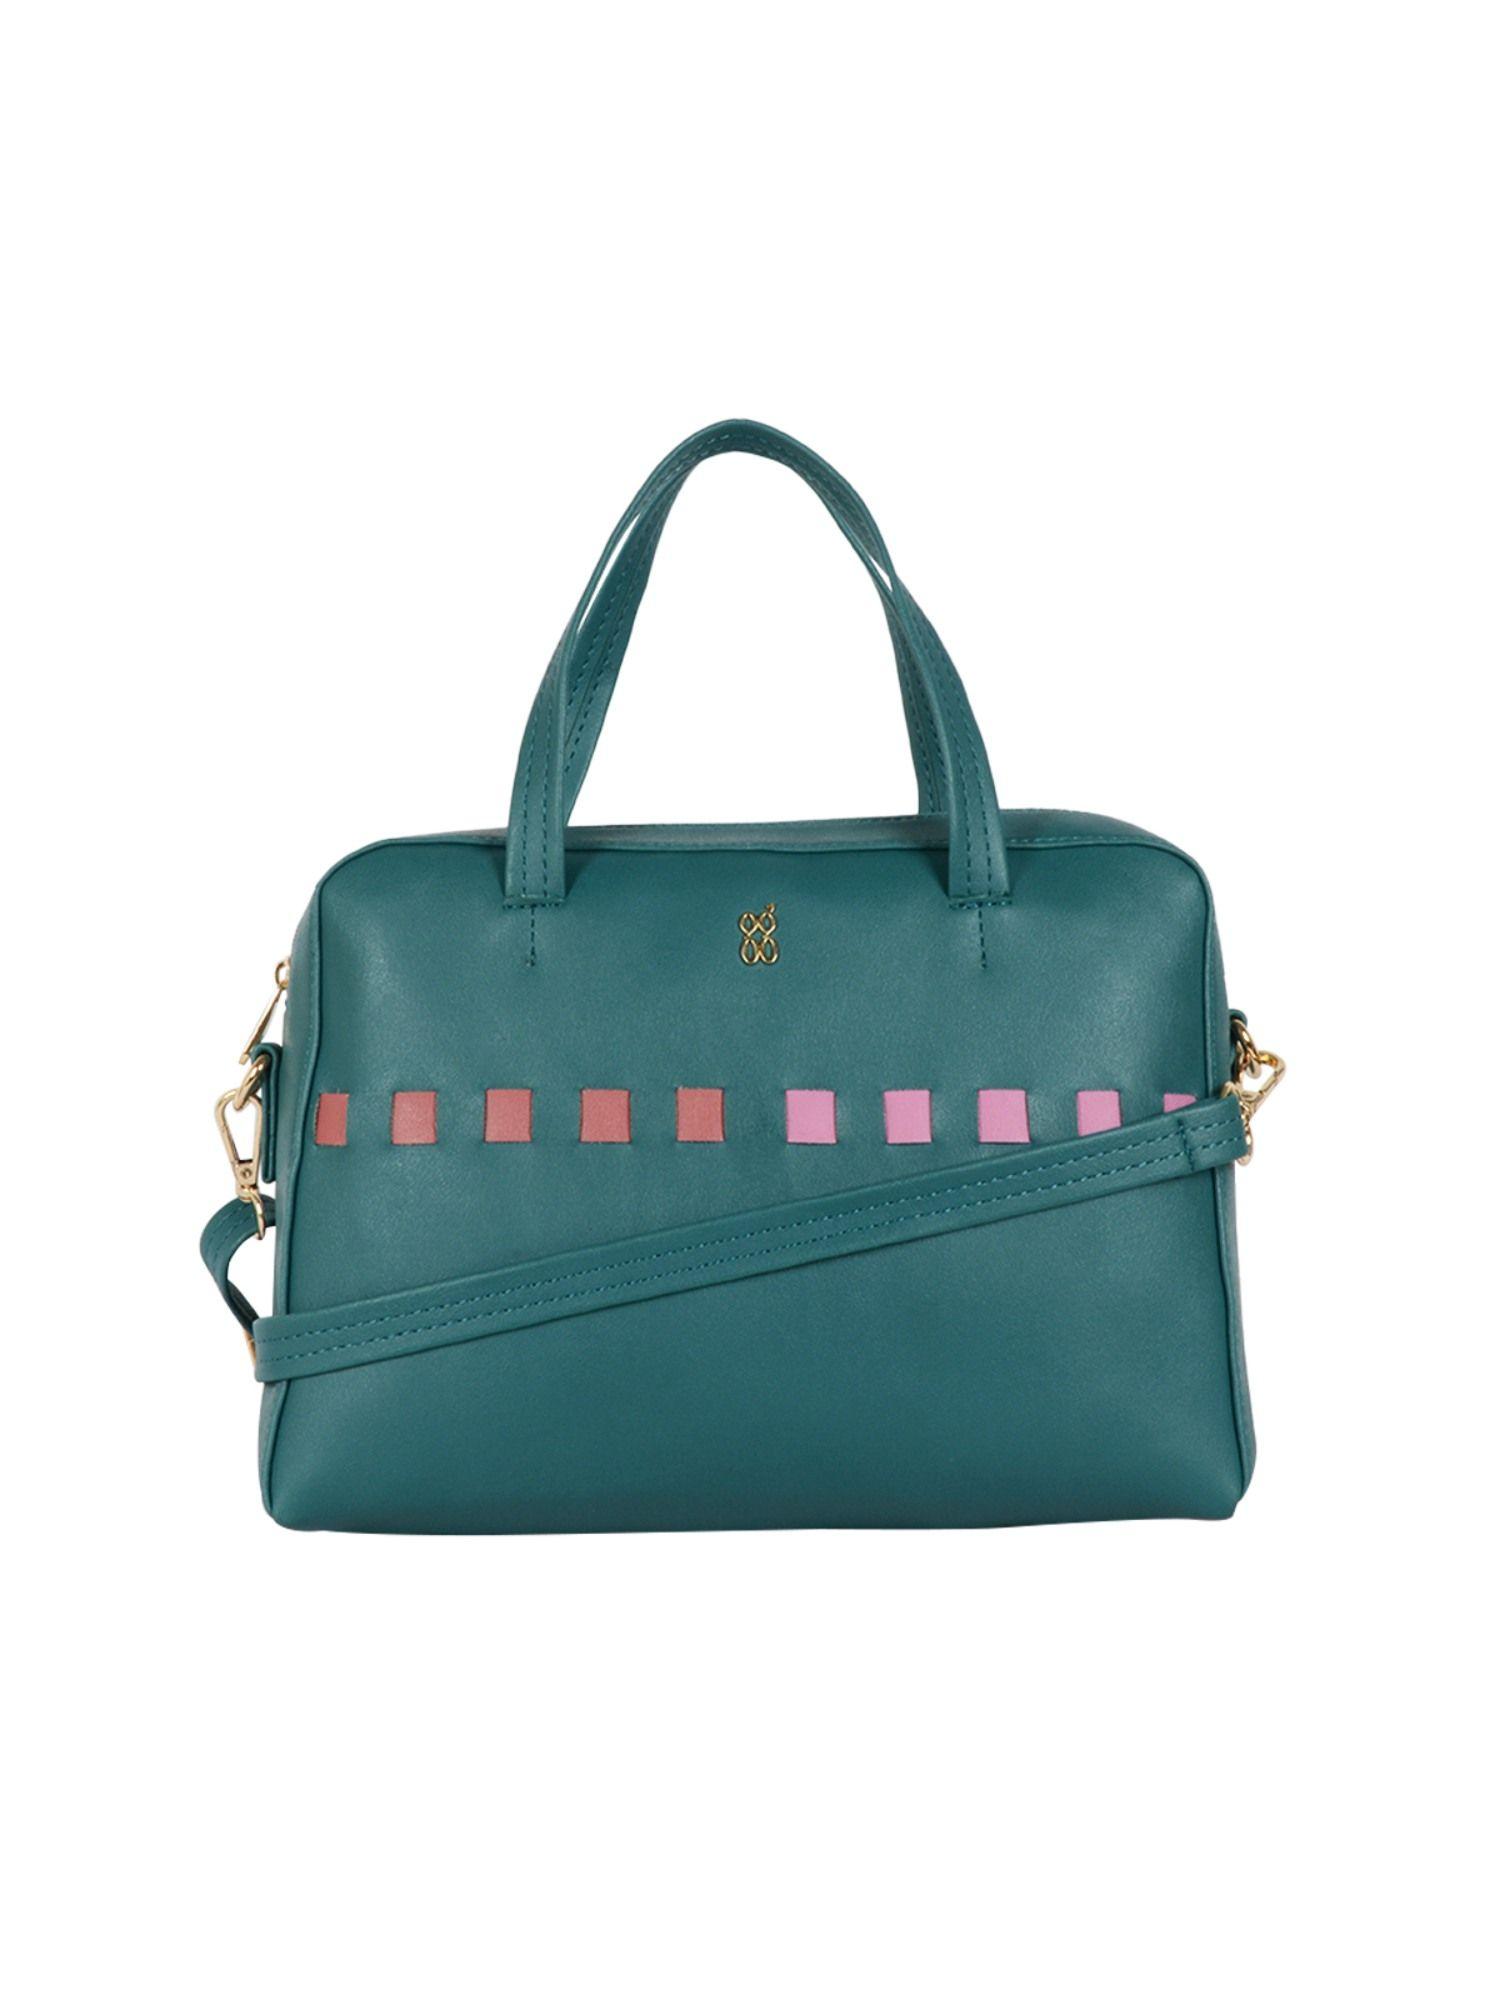 gladly green small tote handbag